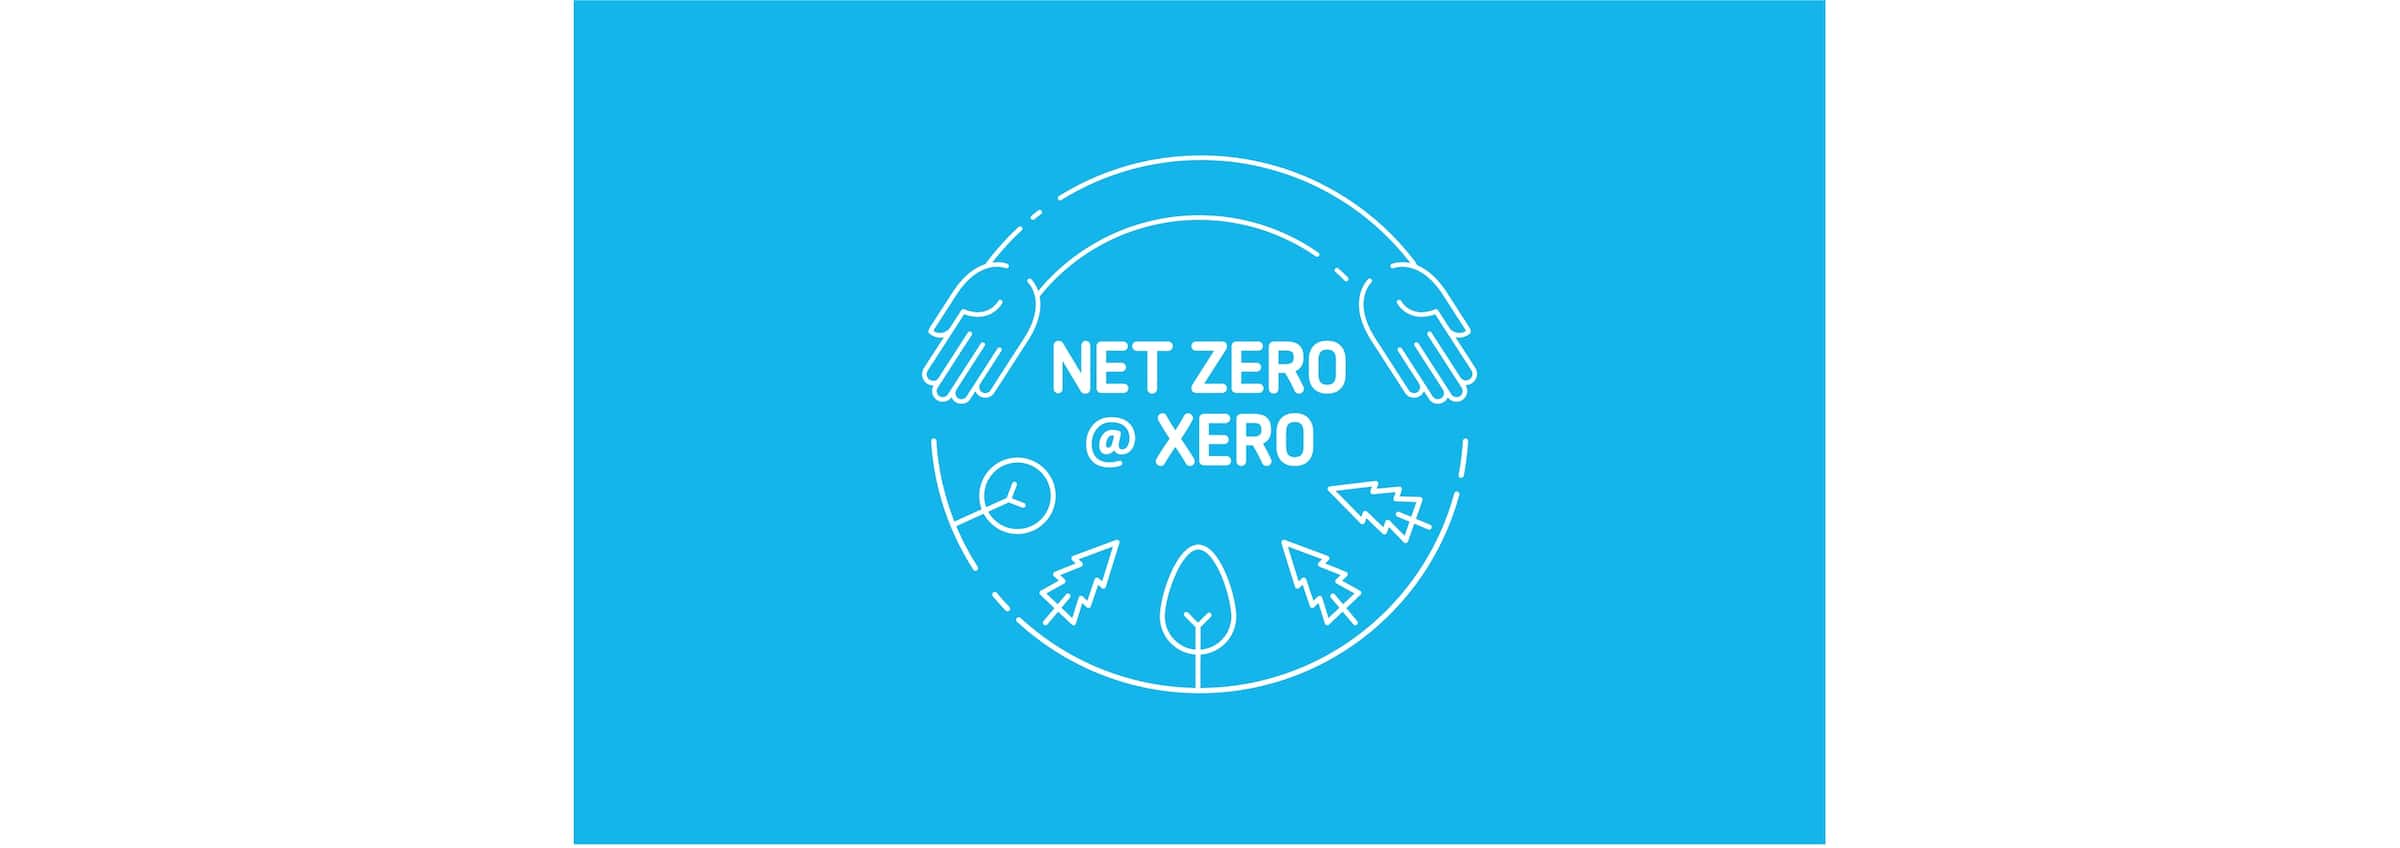 A logo saying ‘Net zero at Xero’.